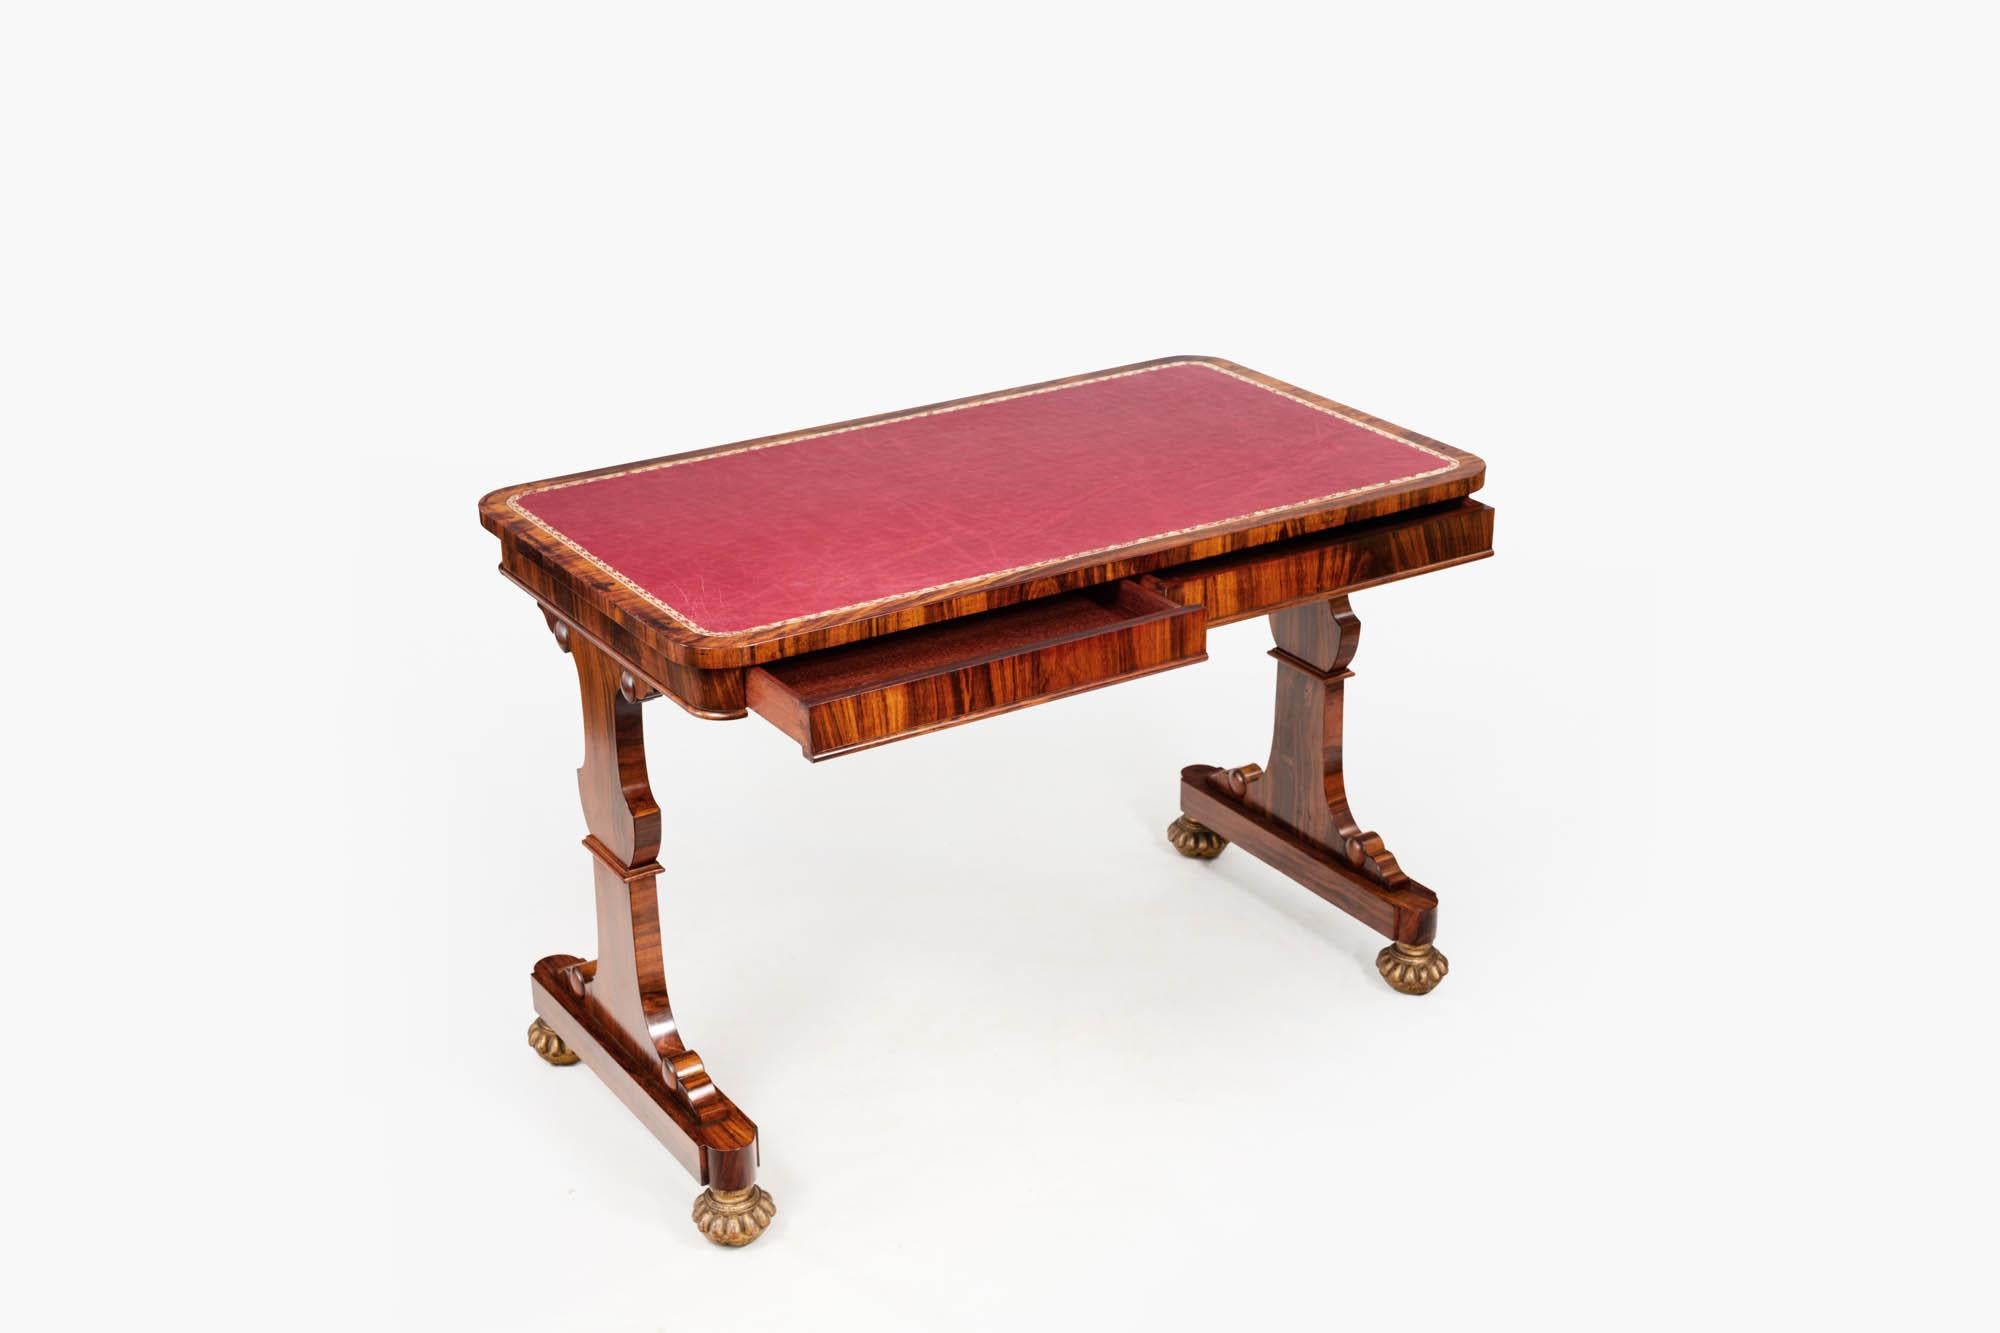 Bibliothekstisch aus Palisanderholz, 19. Jahrhundert. Die rechteckige Platte mit abgerundeten Ecken ist mit einer Schreibfläche aus rotem Leder mit Intarsien versehen und hat zwei verdeckte Schubladen. Auf zwei geschnitzten Pfosten stehend, endet